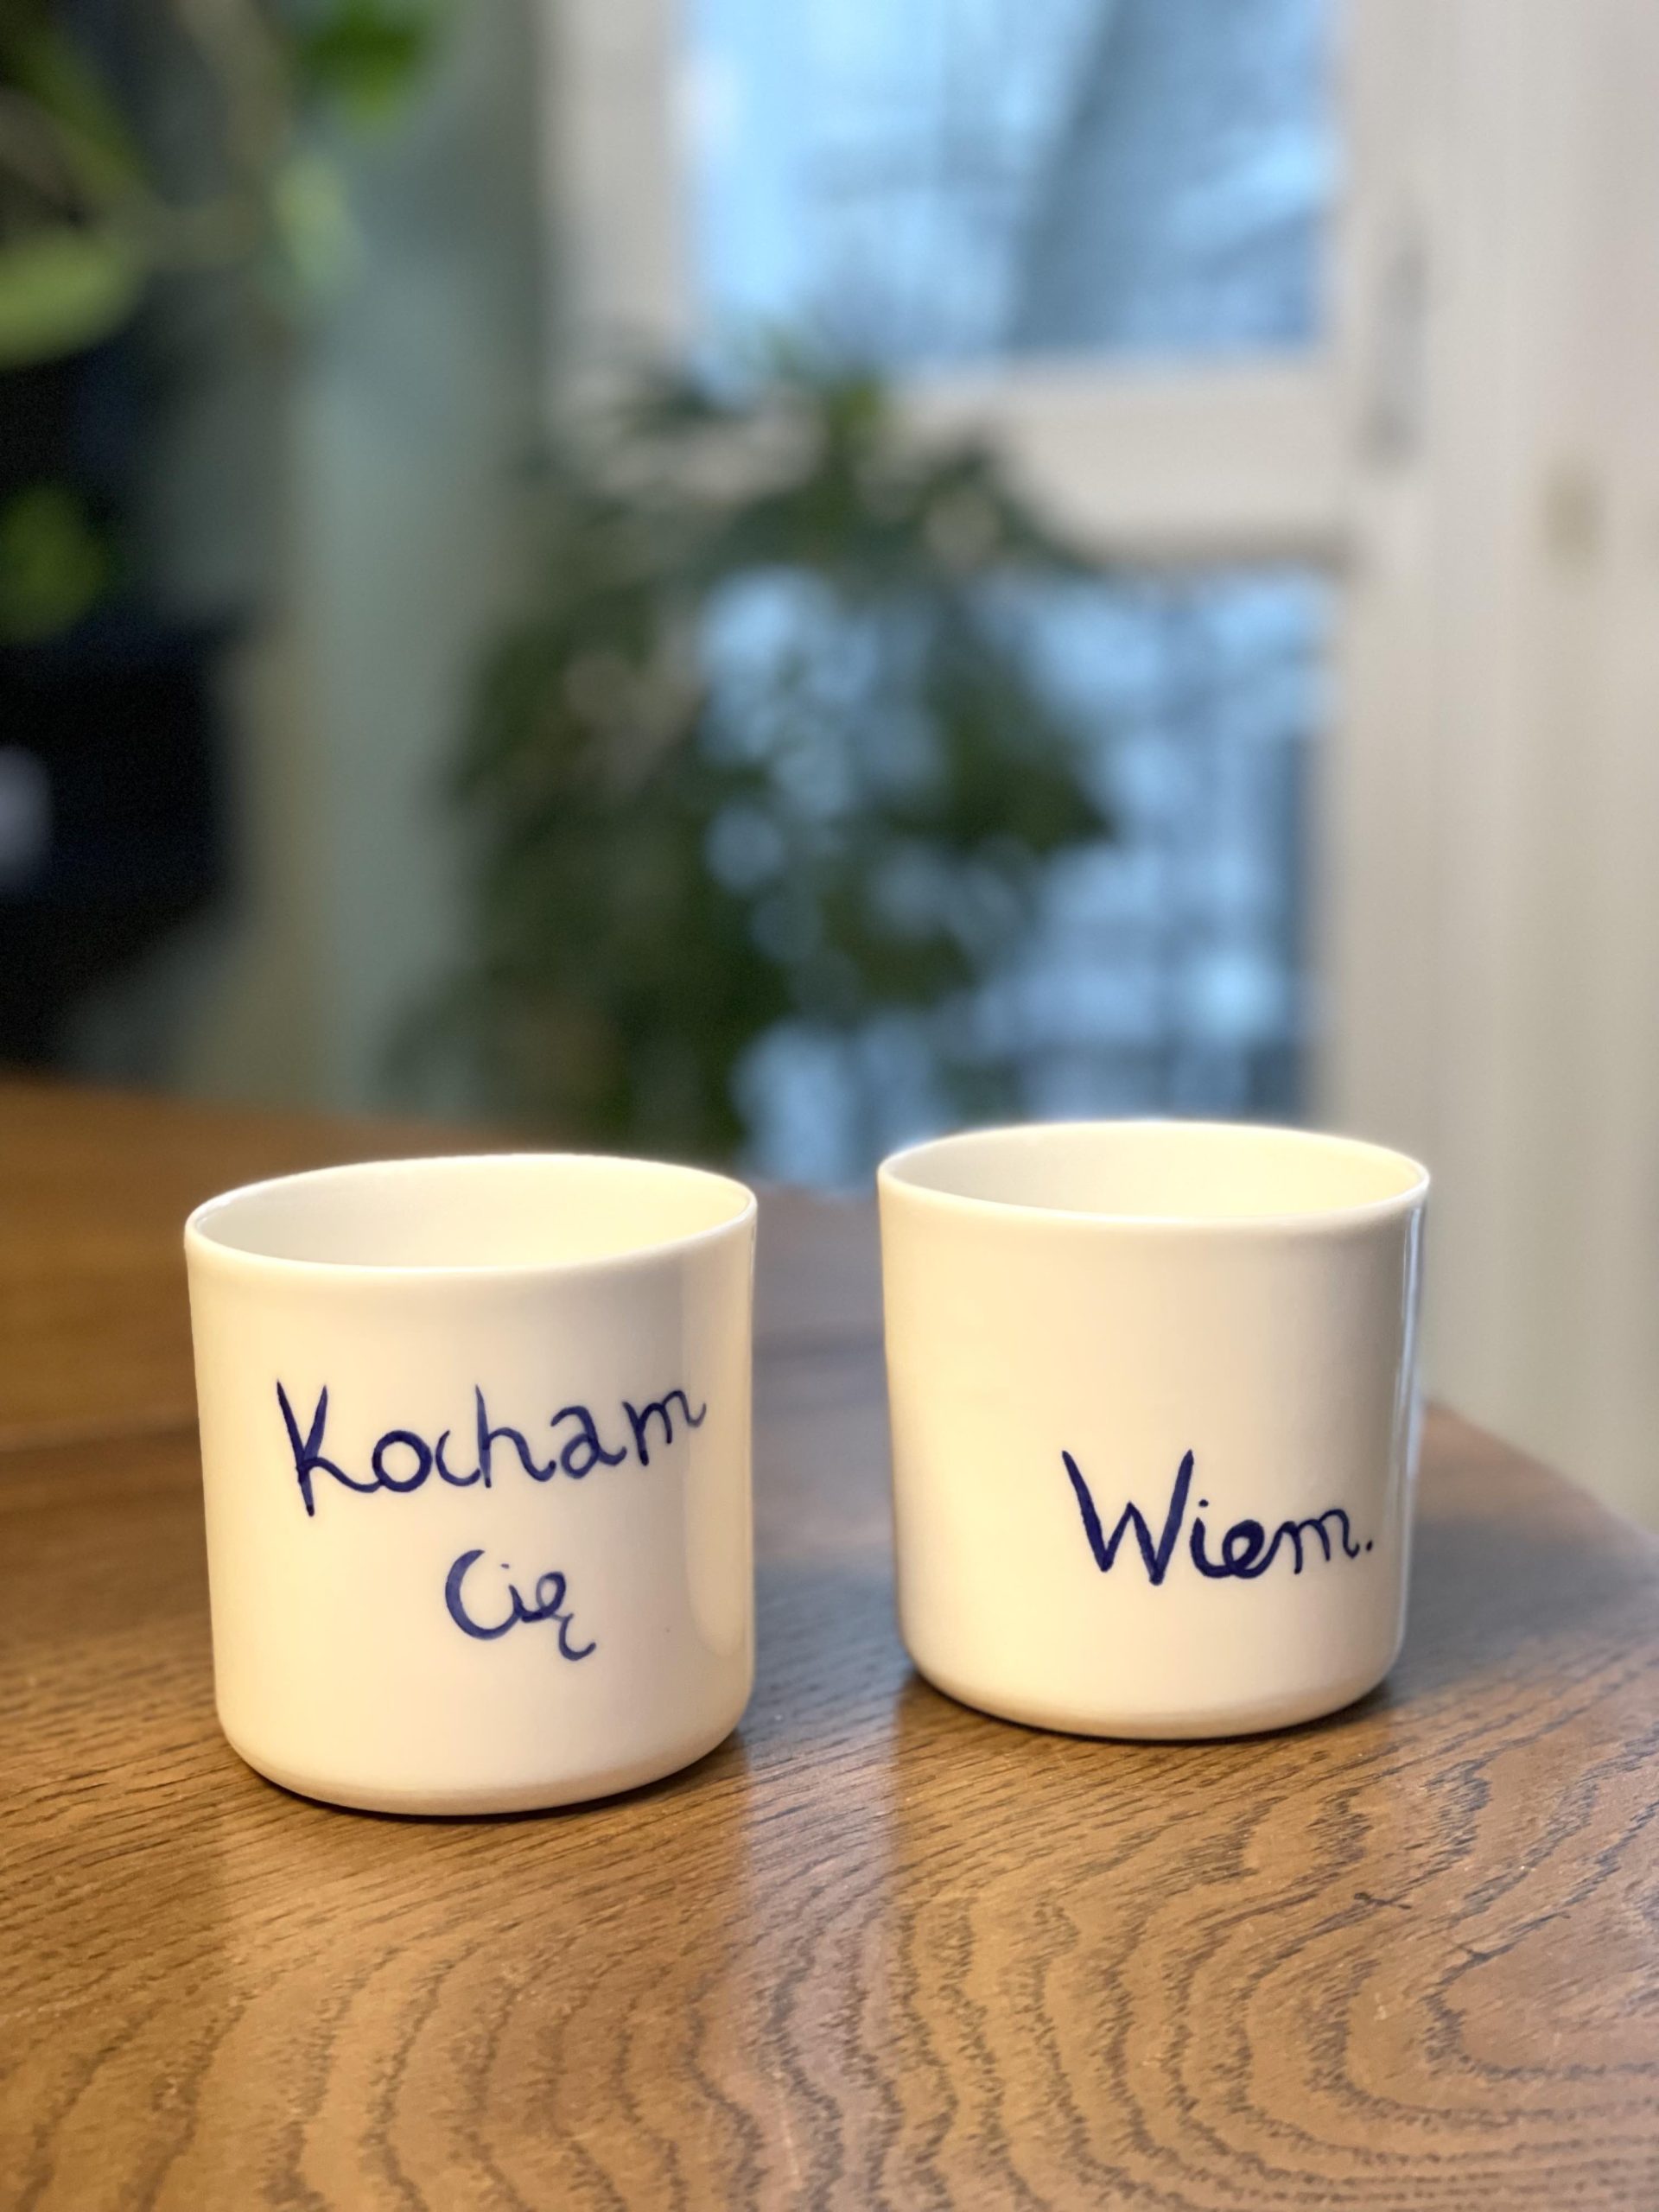 Komplet porcelanowych kubków z napisami "Kocham Cię" oraz "Wiem". Kubek ma pojemność 220 ml. Kubki są ręcznie robione.